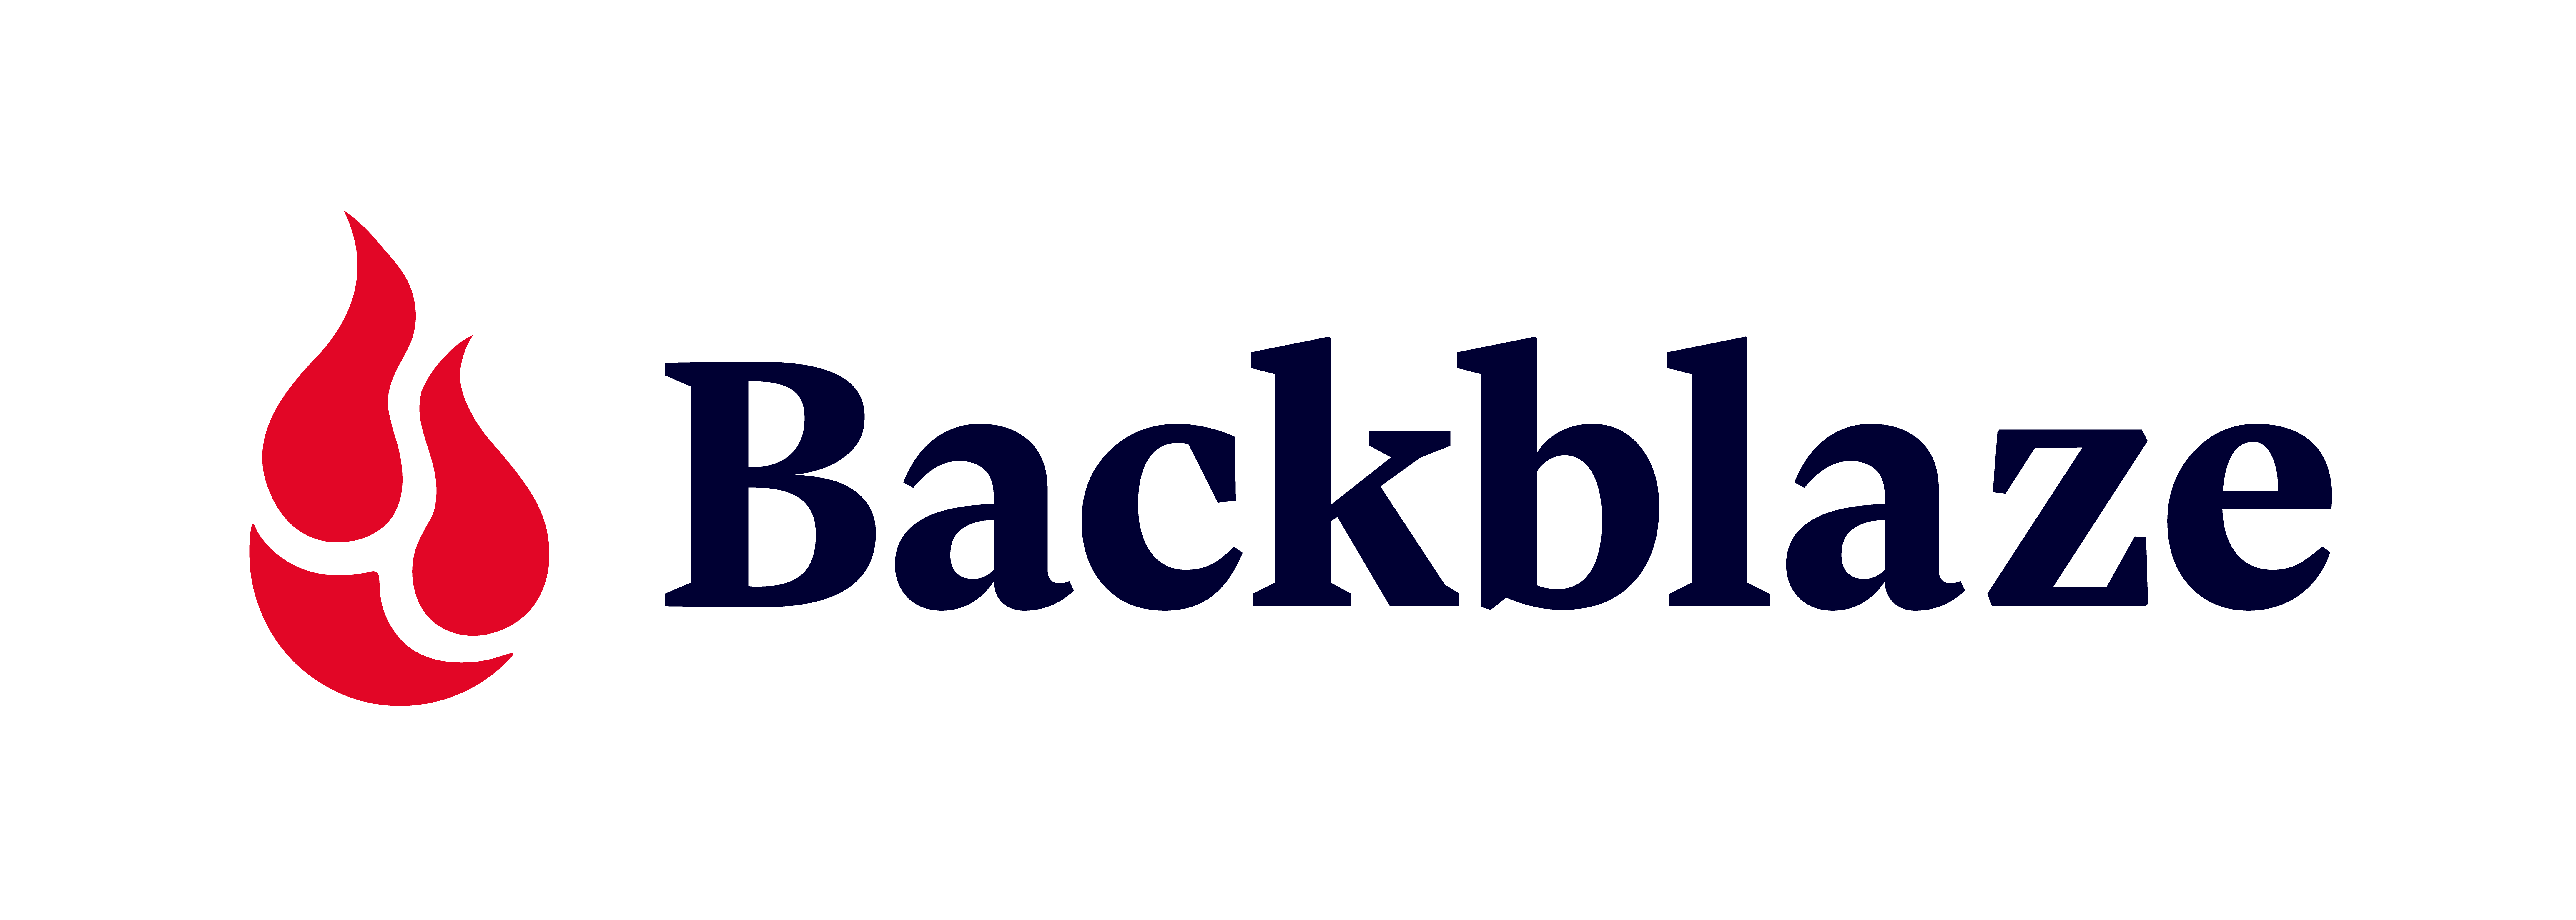 Backblaze Announces Second Quarter 2022 Financial Results